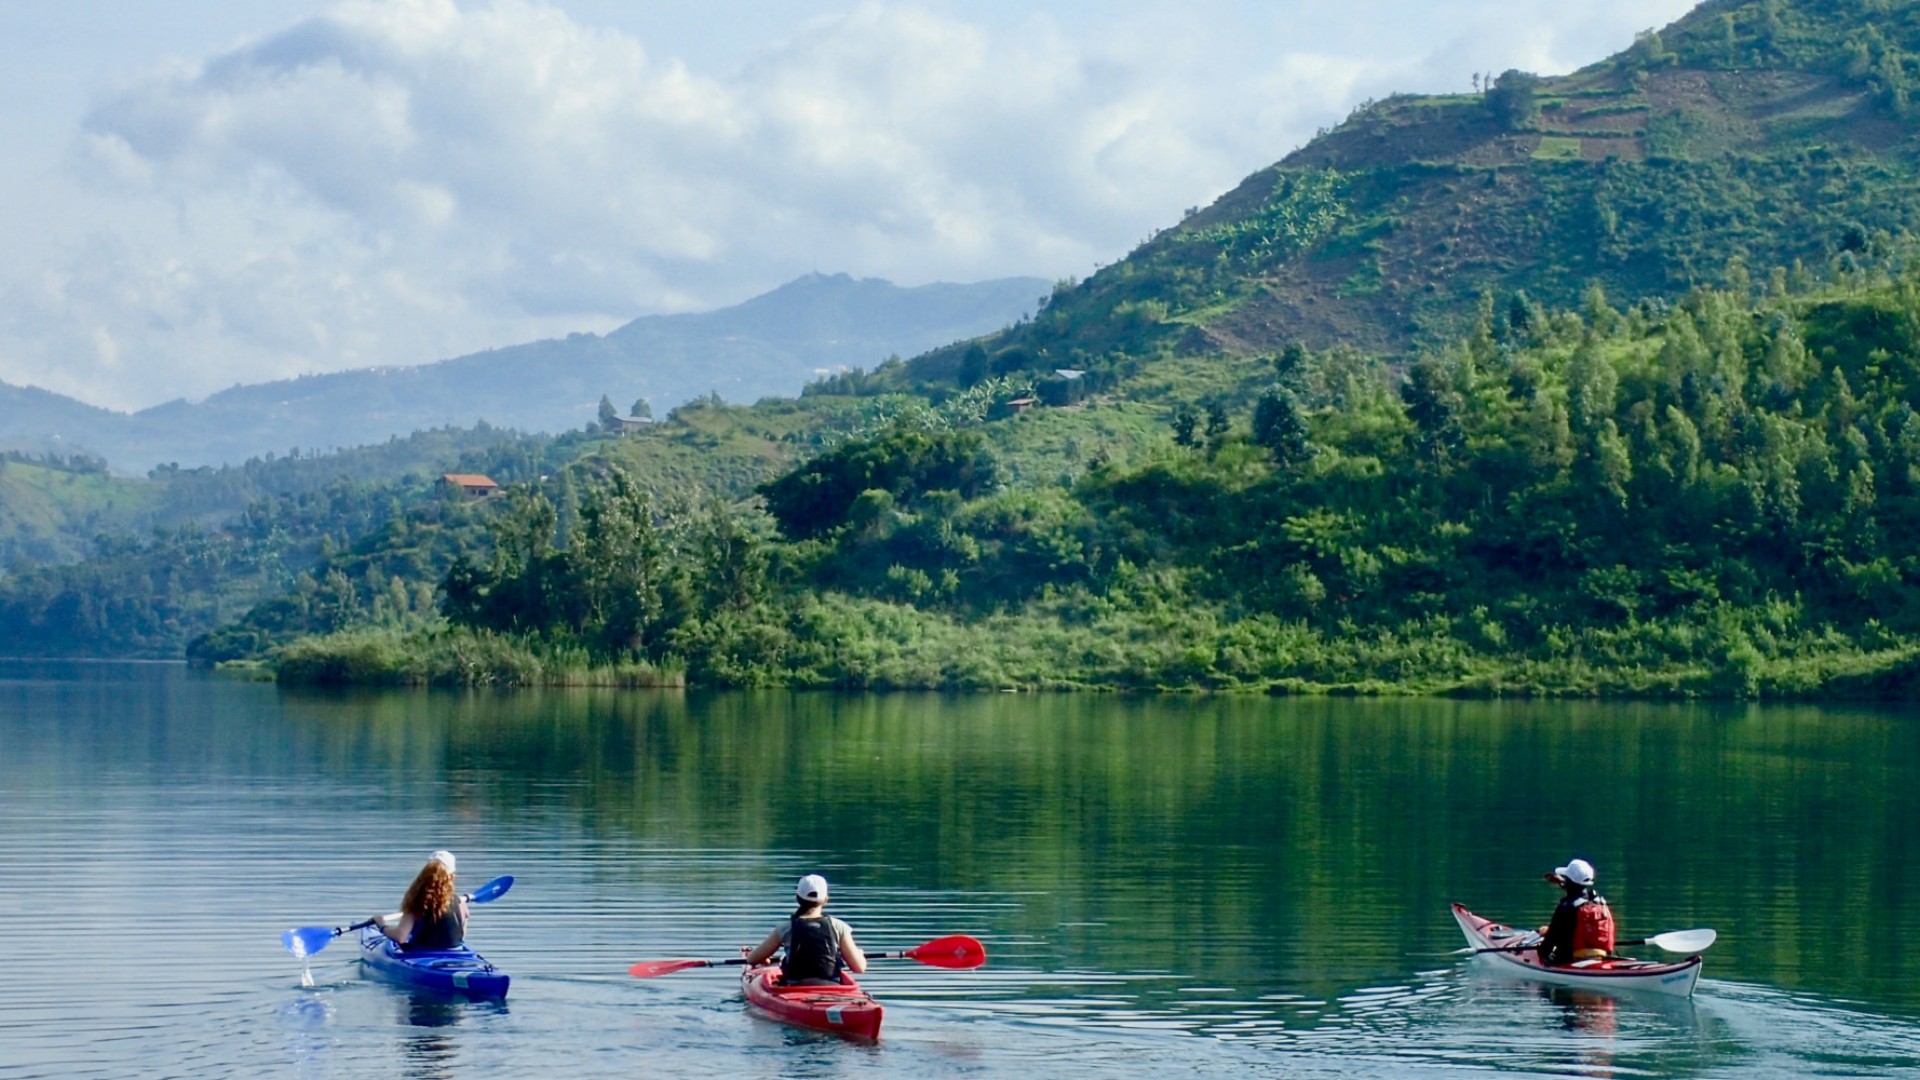 Three people kayaking on Lake Kivu surrounded my lush green rolling hills in rwanda